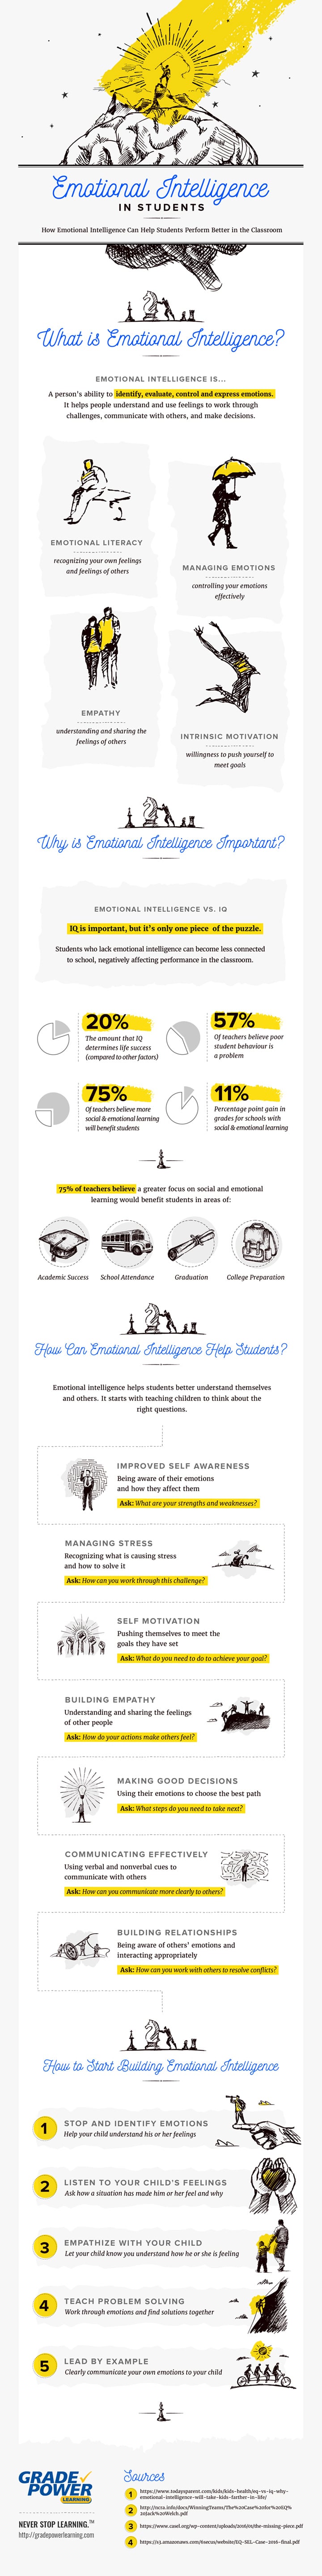 Emotional-Intelligence-Infographic